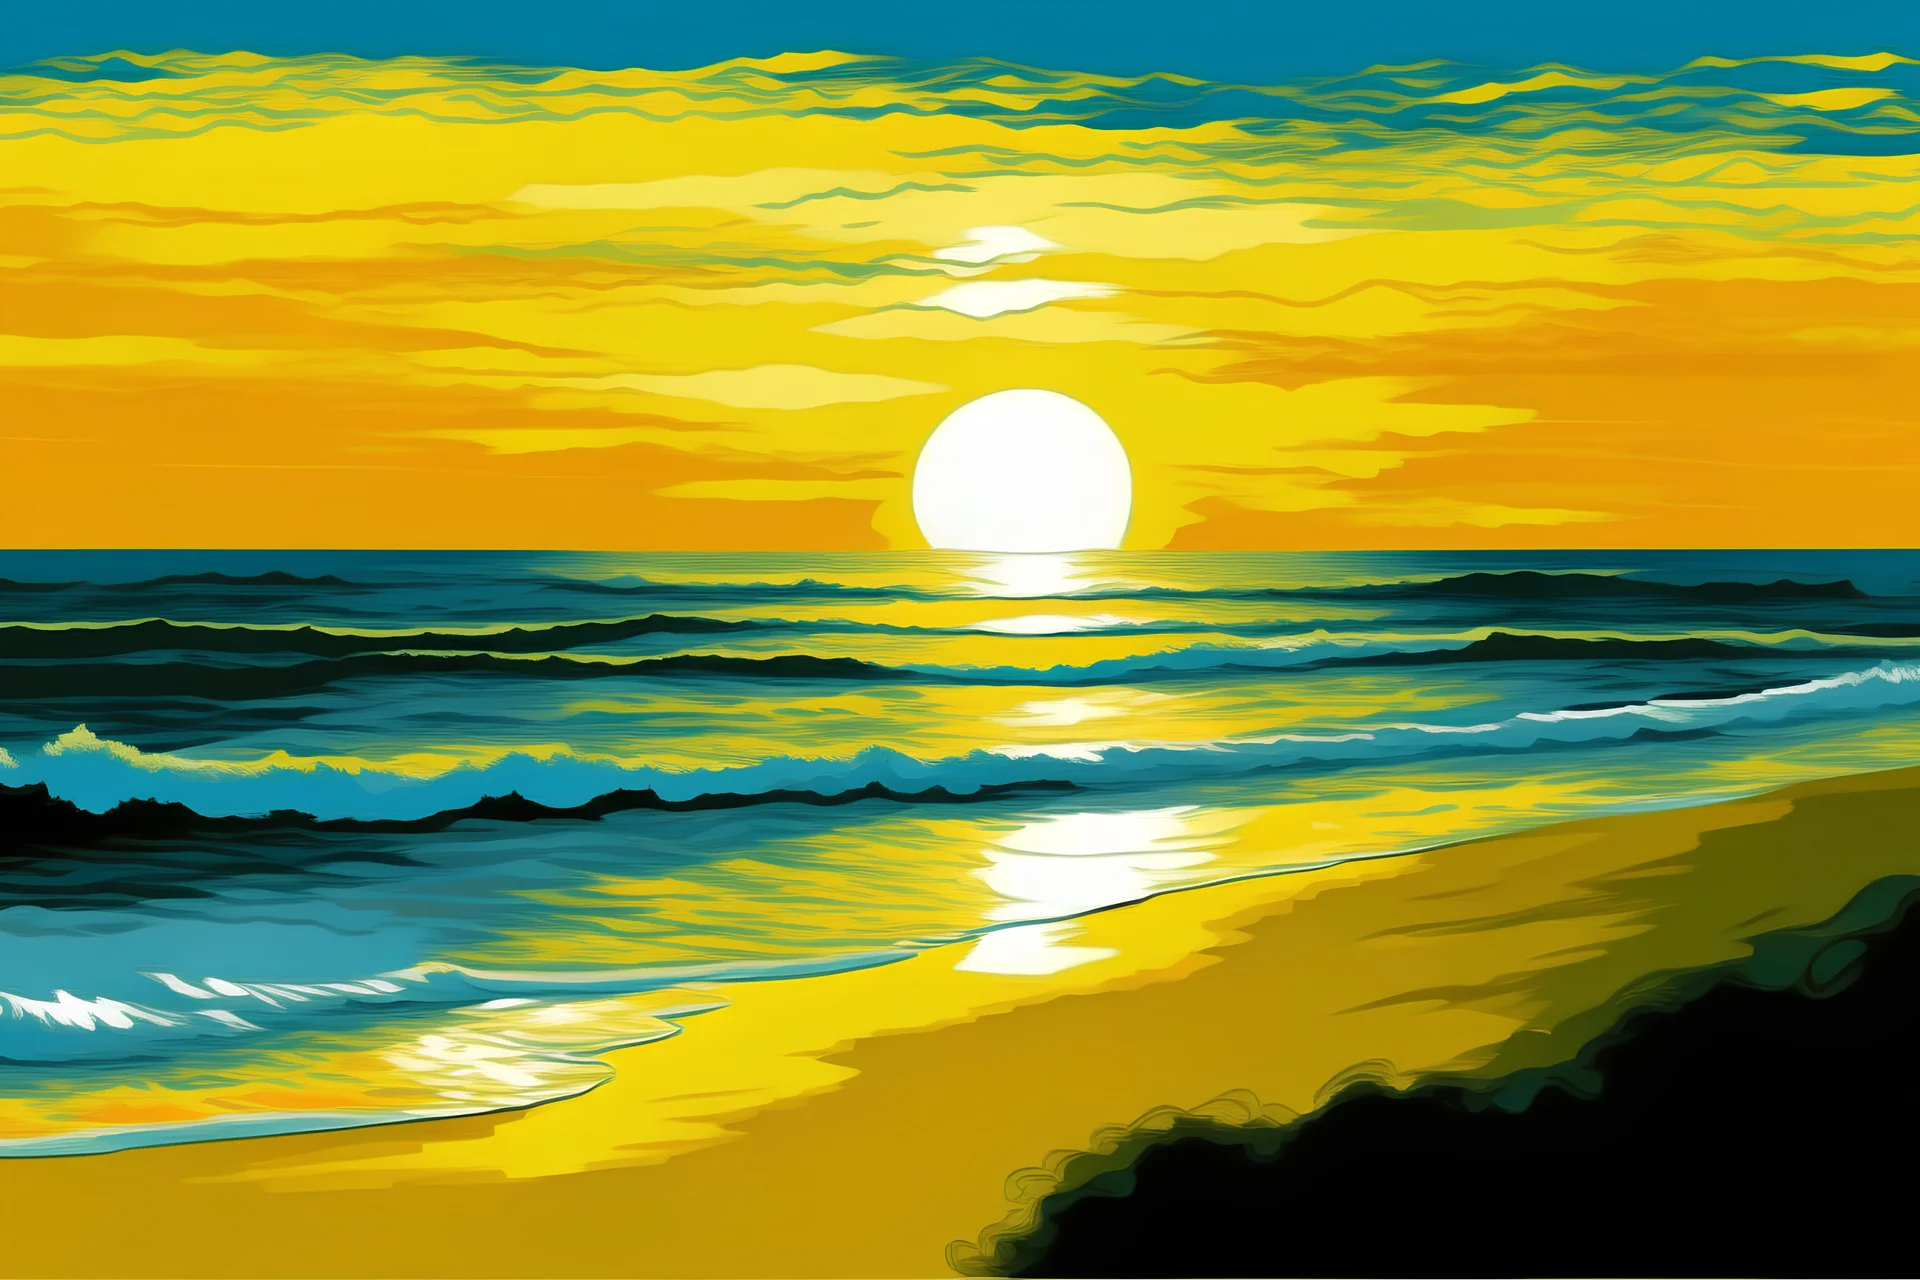 plano general de atardecer en la playa con el mar de fondo al estilo de Claude Monet